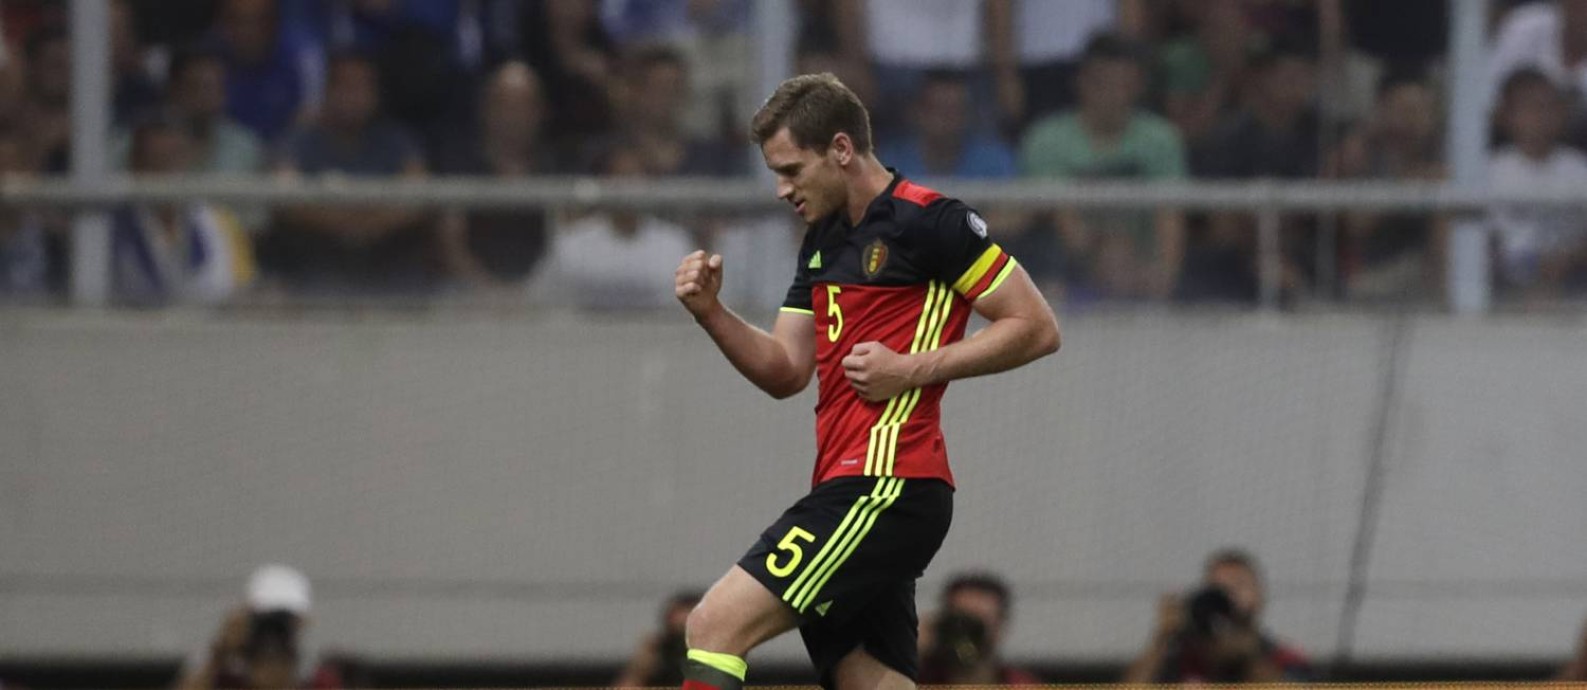 Vertonghen comemora o gol que abriu o placar para a Bélgica contra a Grécia Foto: Thanassis Stavrakis / AP